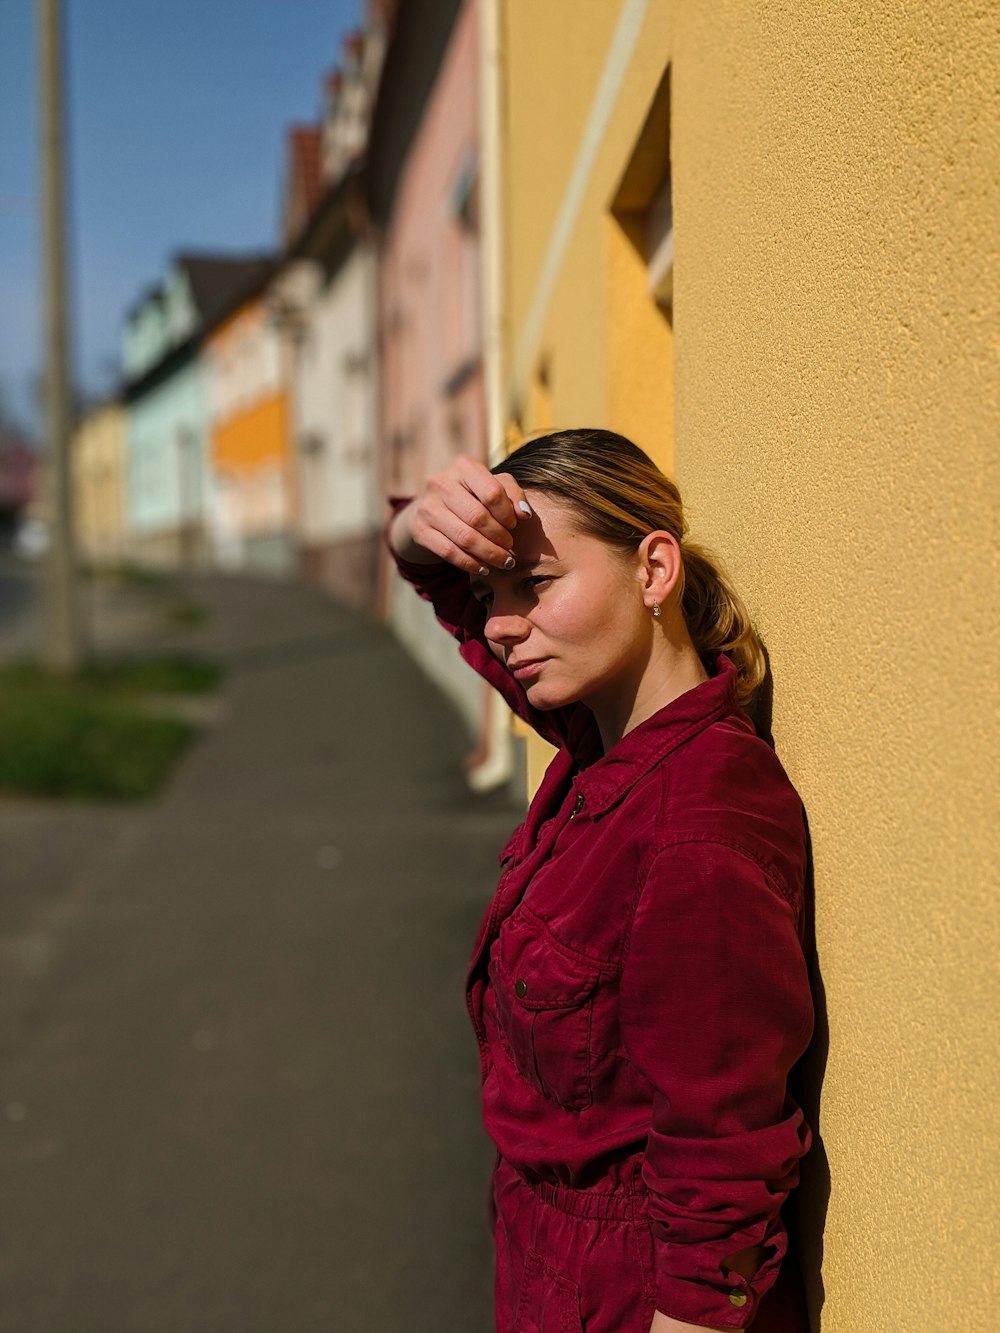 赤い長袖シャツを着た女性で、黒いフレームの眼鏡をかけ、昼間、黄色い壁のそばに立っている